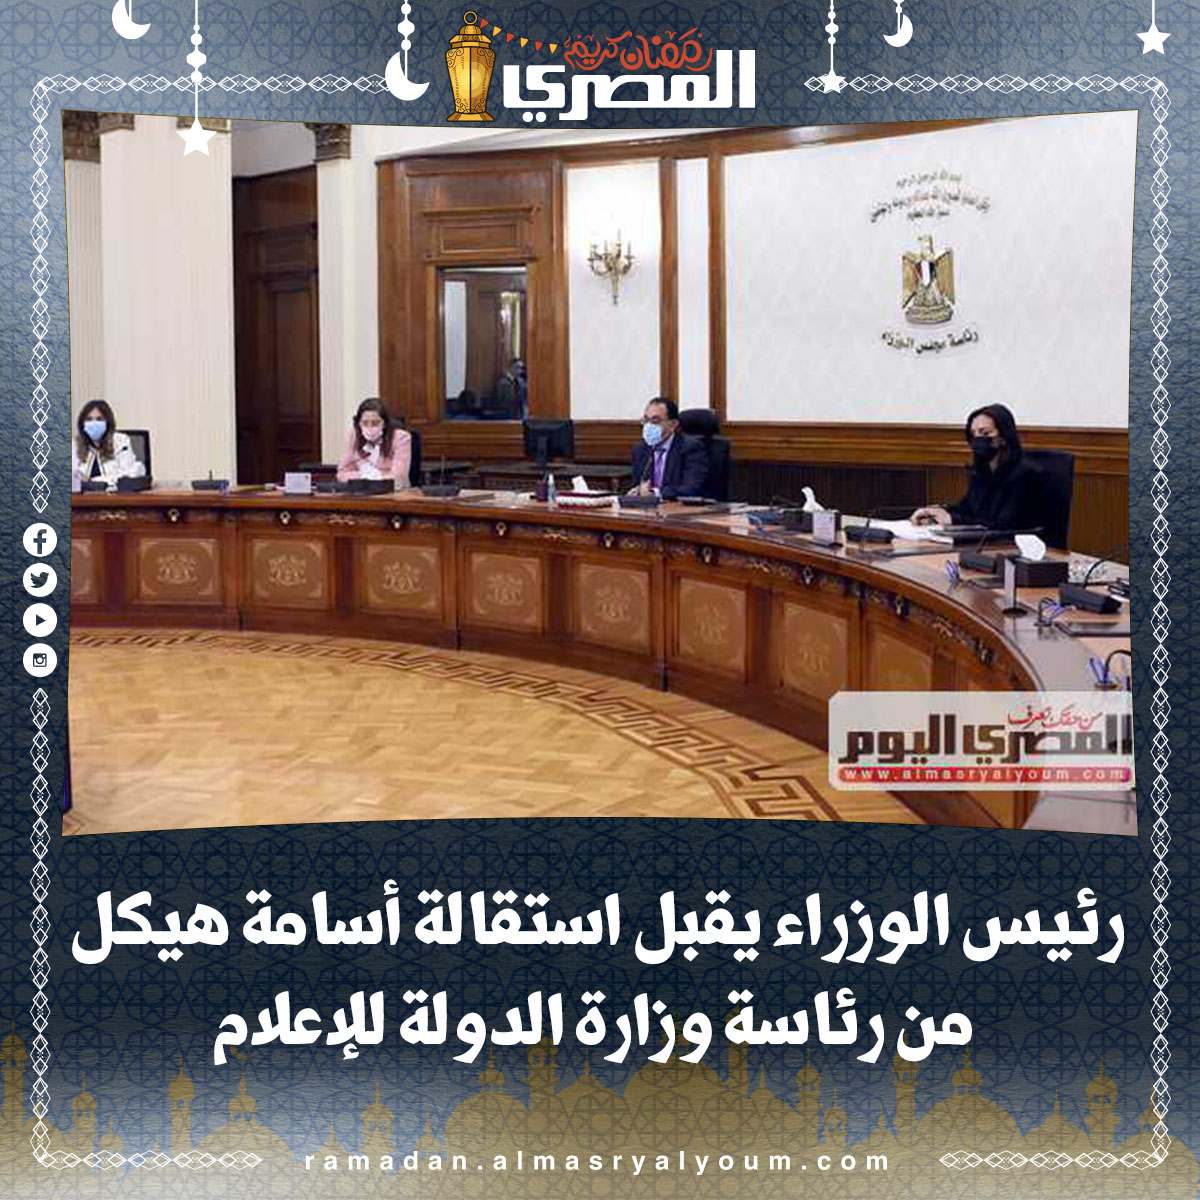 رئيس الوزراء يقبل استقالة أسامة هيكل من رئاسة وزارة الدولة للإعلام (نص القرار)